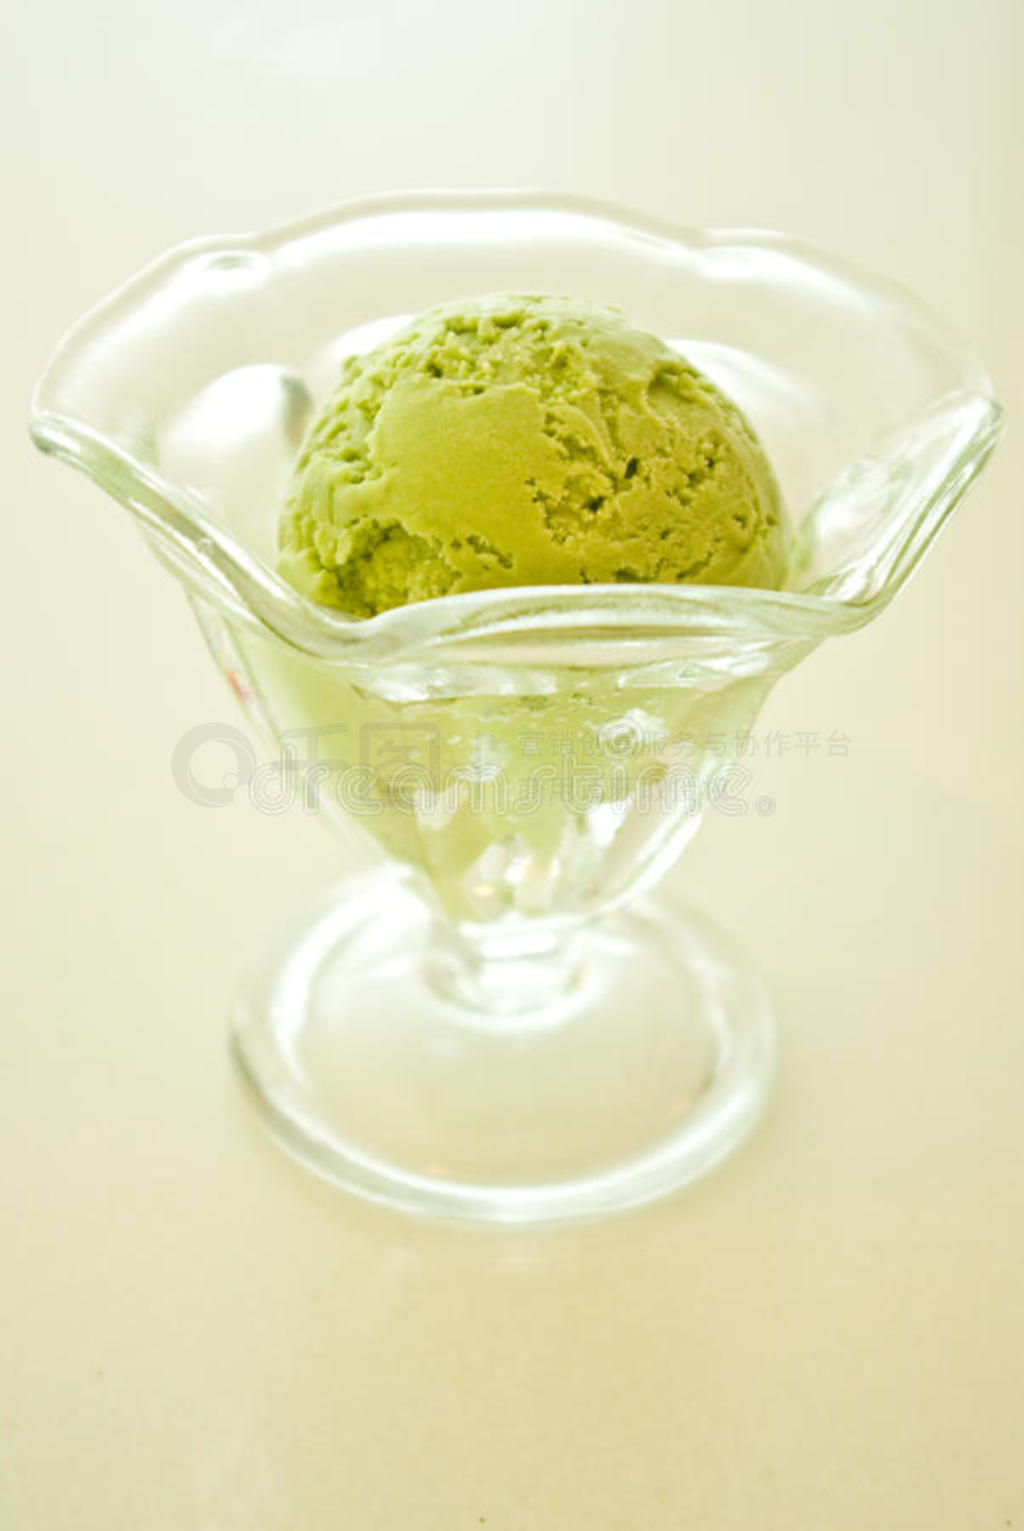 日本绿茶冰淇淋。在日本享用绿茶冰淇淋蛋筒。一个拿着双色冰淇淋蛋筒的女孩。风景名胜免费下载_jpg格式_2592像素_编号42207920-千图网